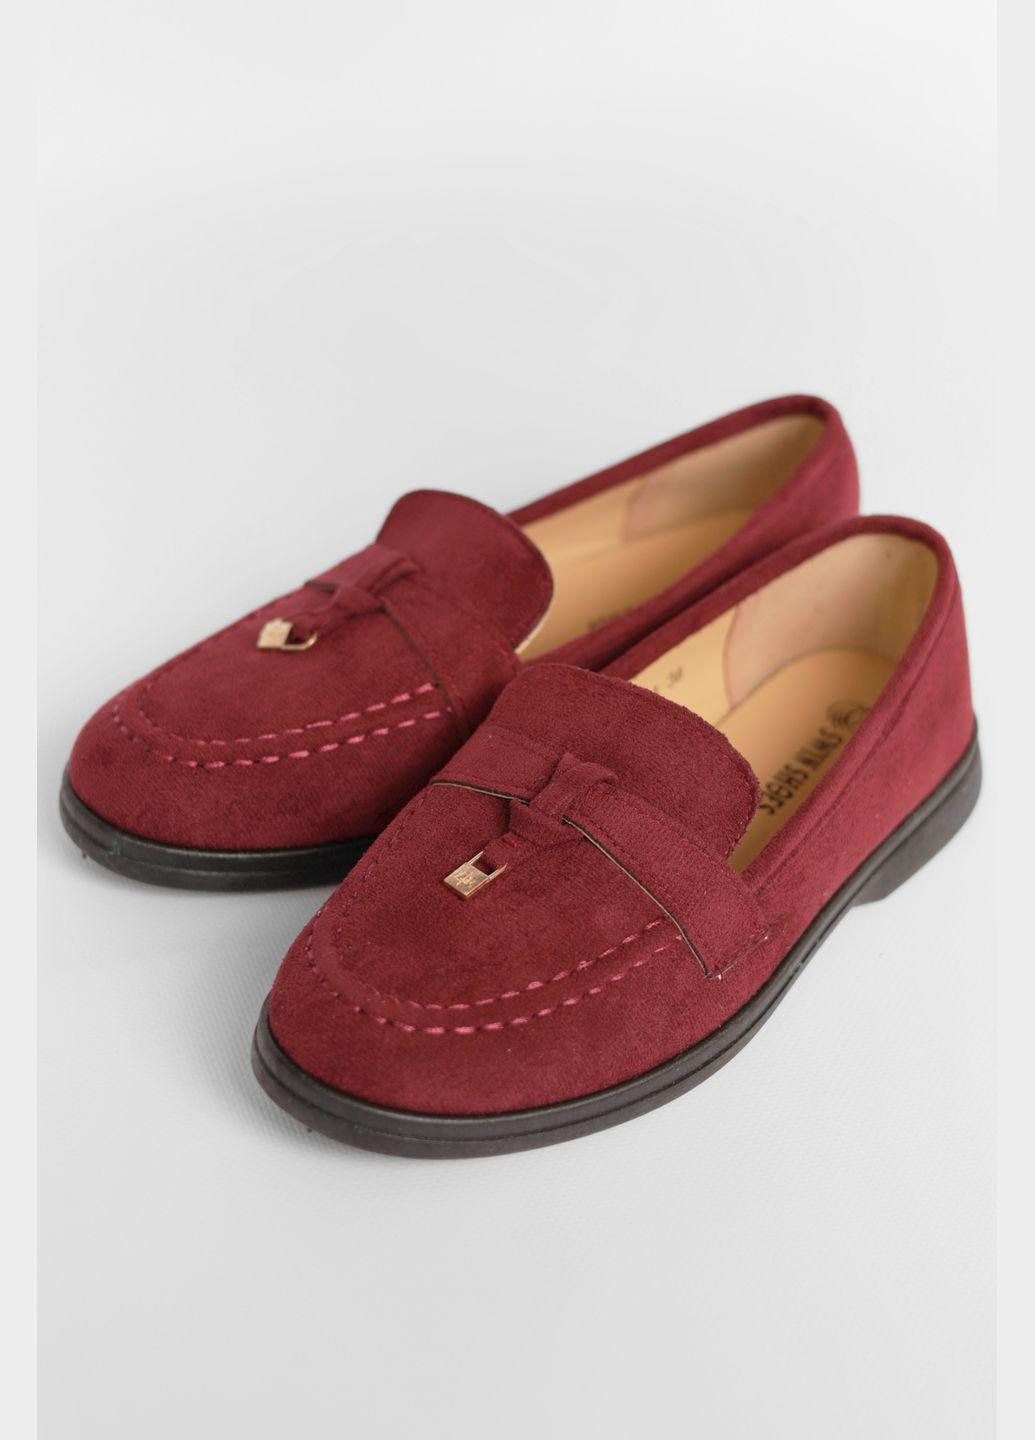 Туфли-лоферы женские бордового цвета Let's Shop с цепочками